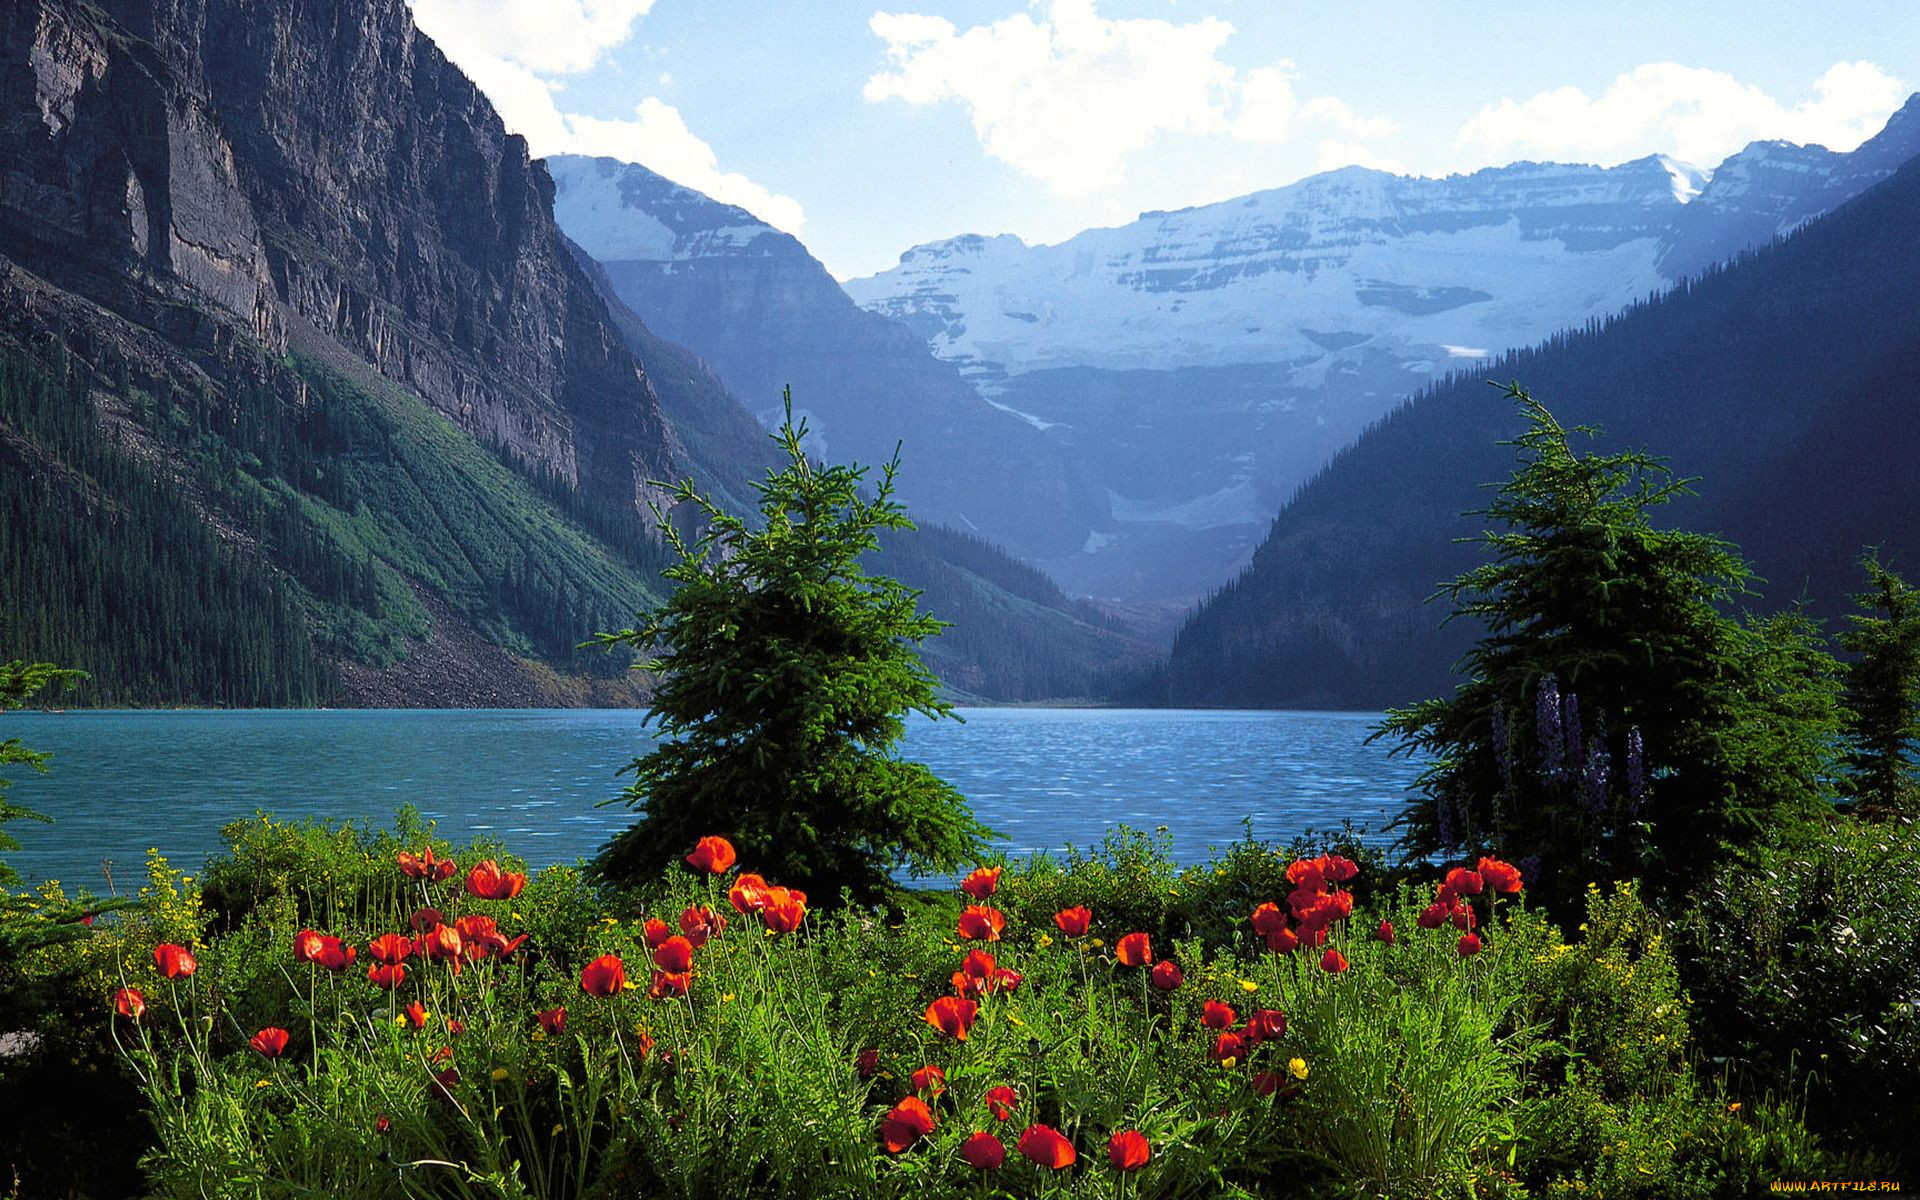 Местоположение и природа. Цветы Канады Банф. Мультинские озера. Швейцария манзаралари.